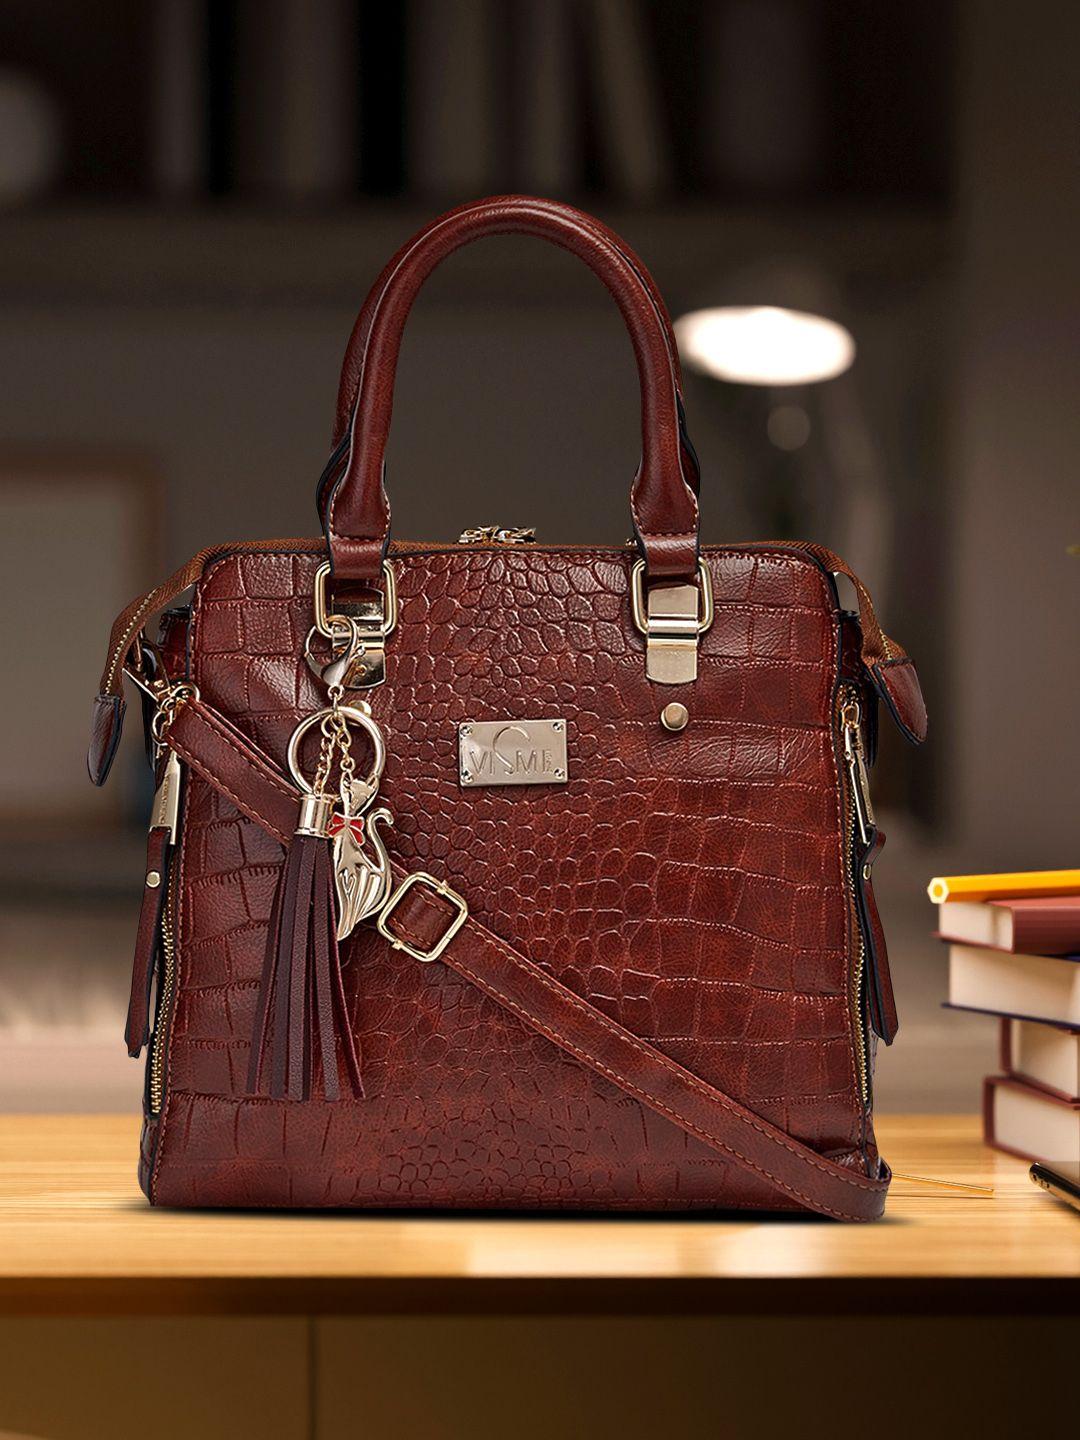 vismiintrend brown textured pu structured satchel with tasselled